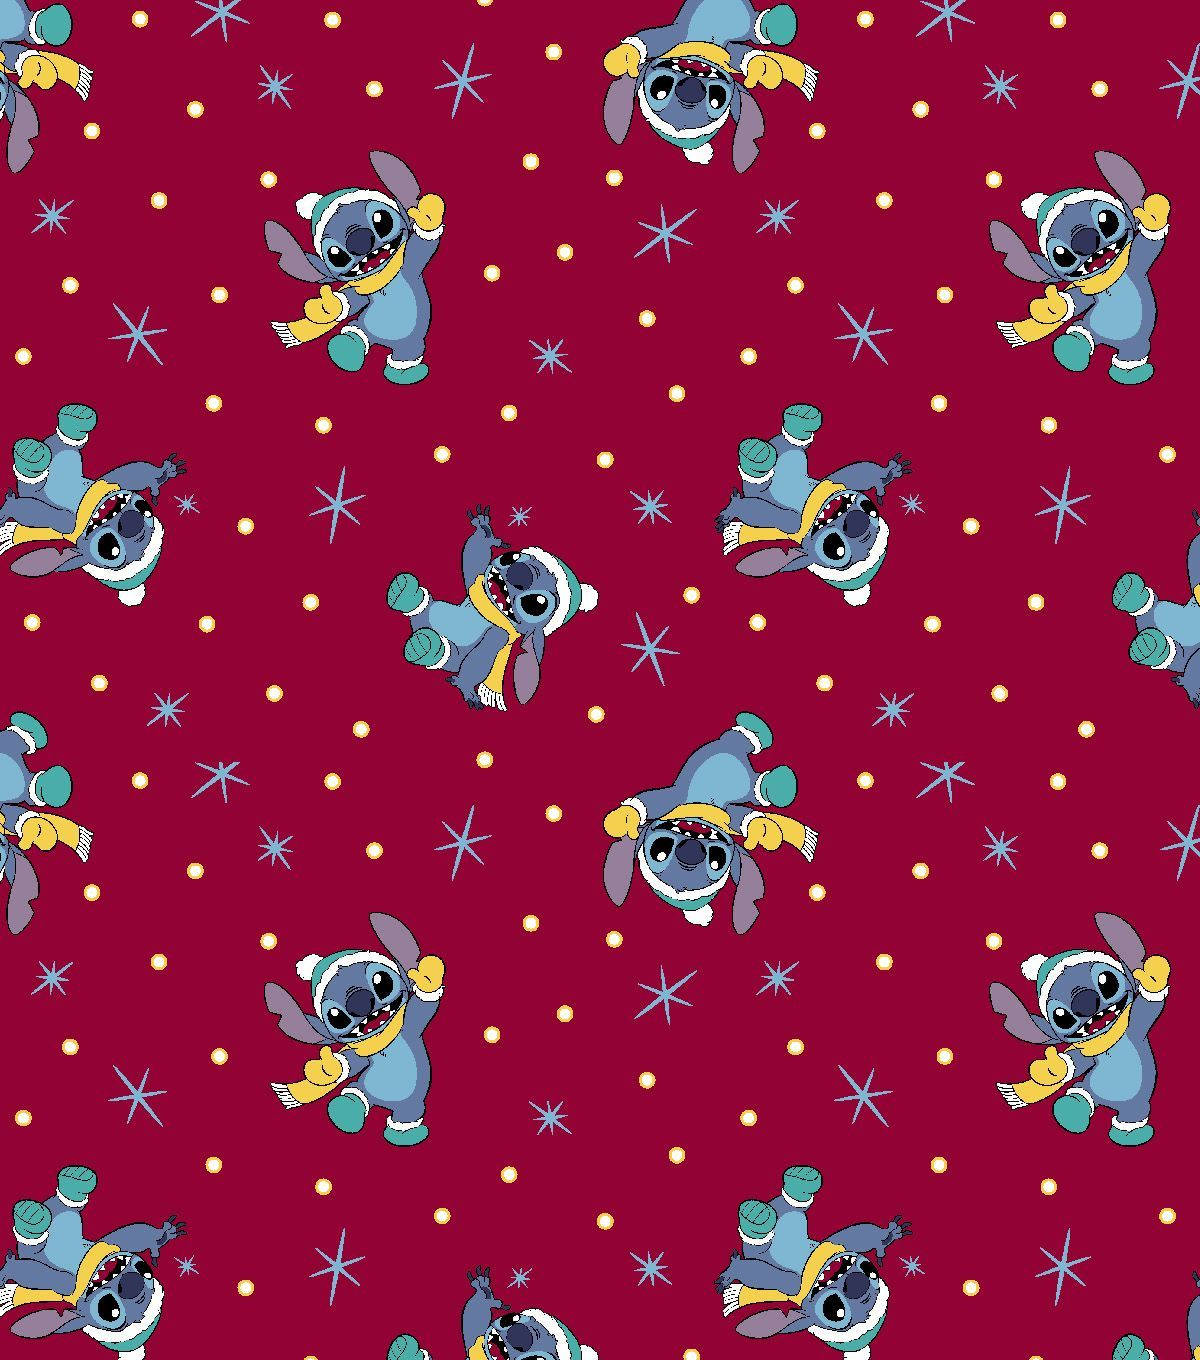 Fun Christmas Stitch Pattern Wallpaper